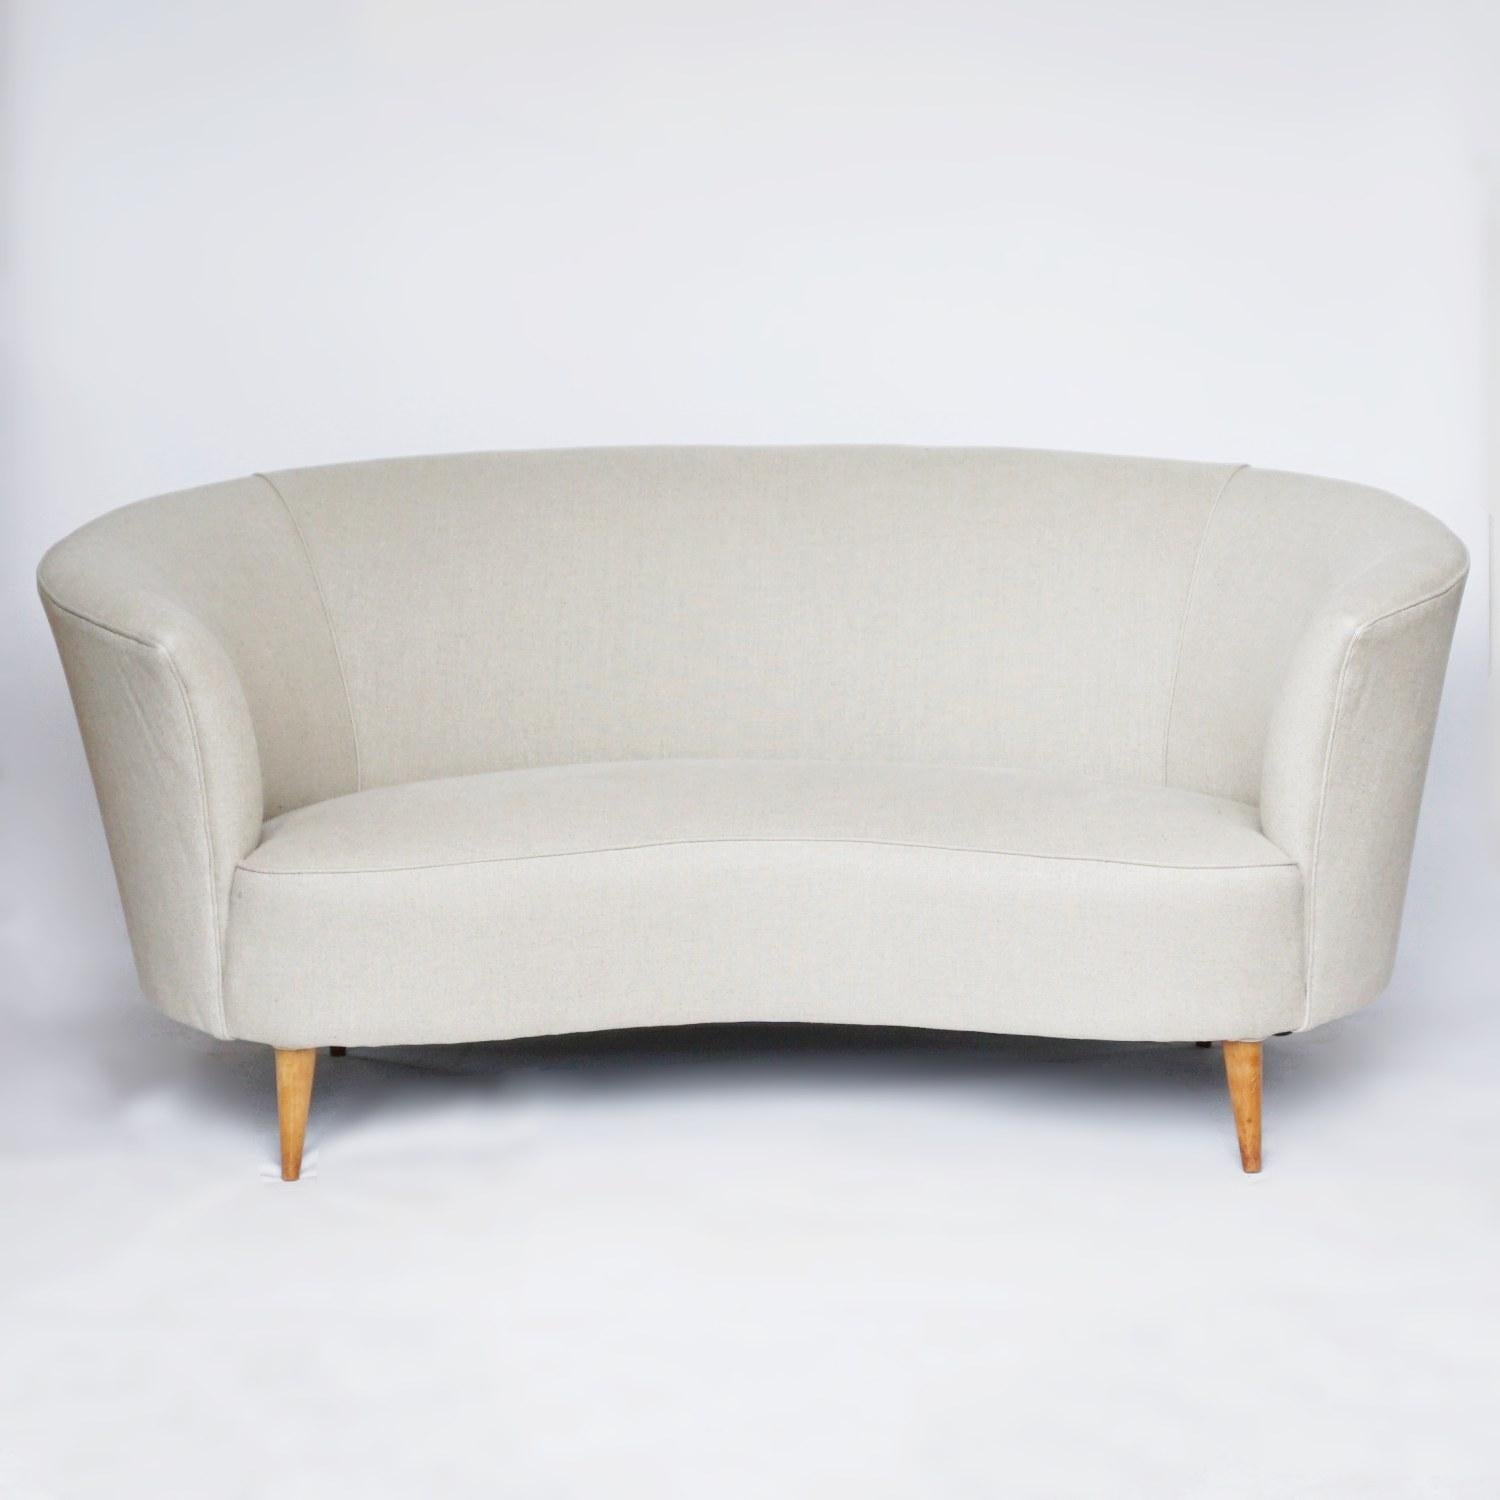 Mid-Century Modern Midcentury Sofa Attributed to Gio Ponti, Italian, circa 1950